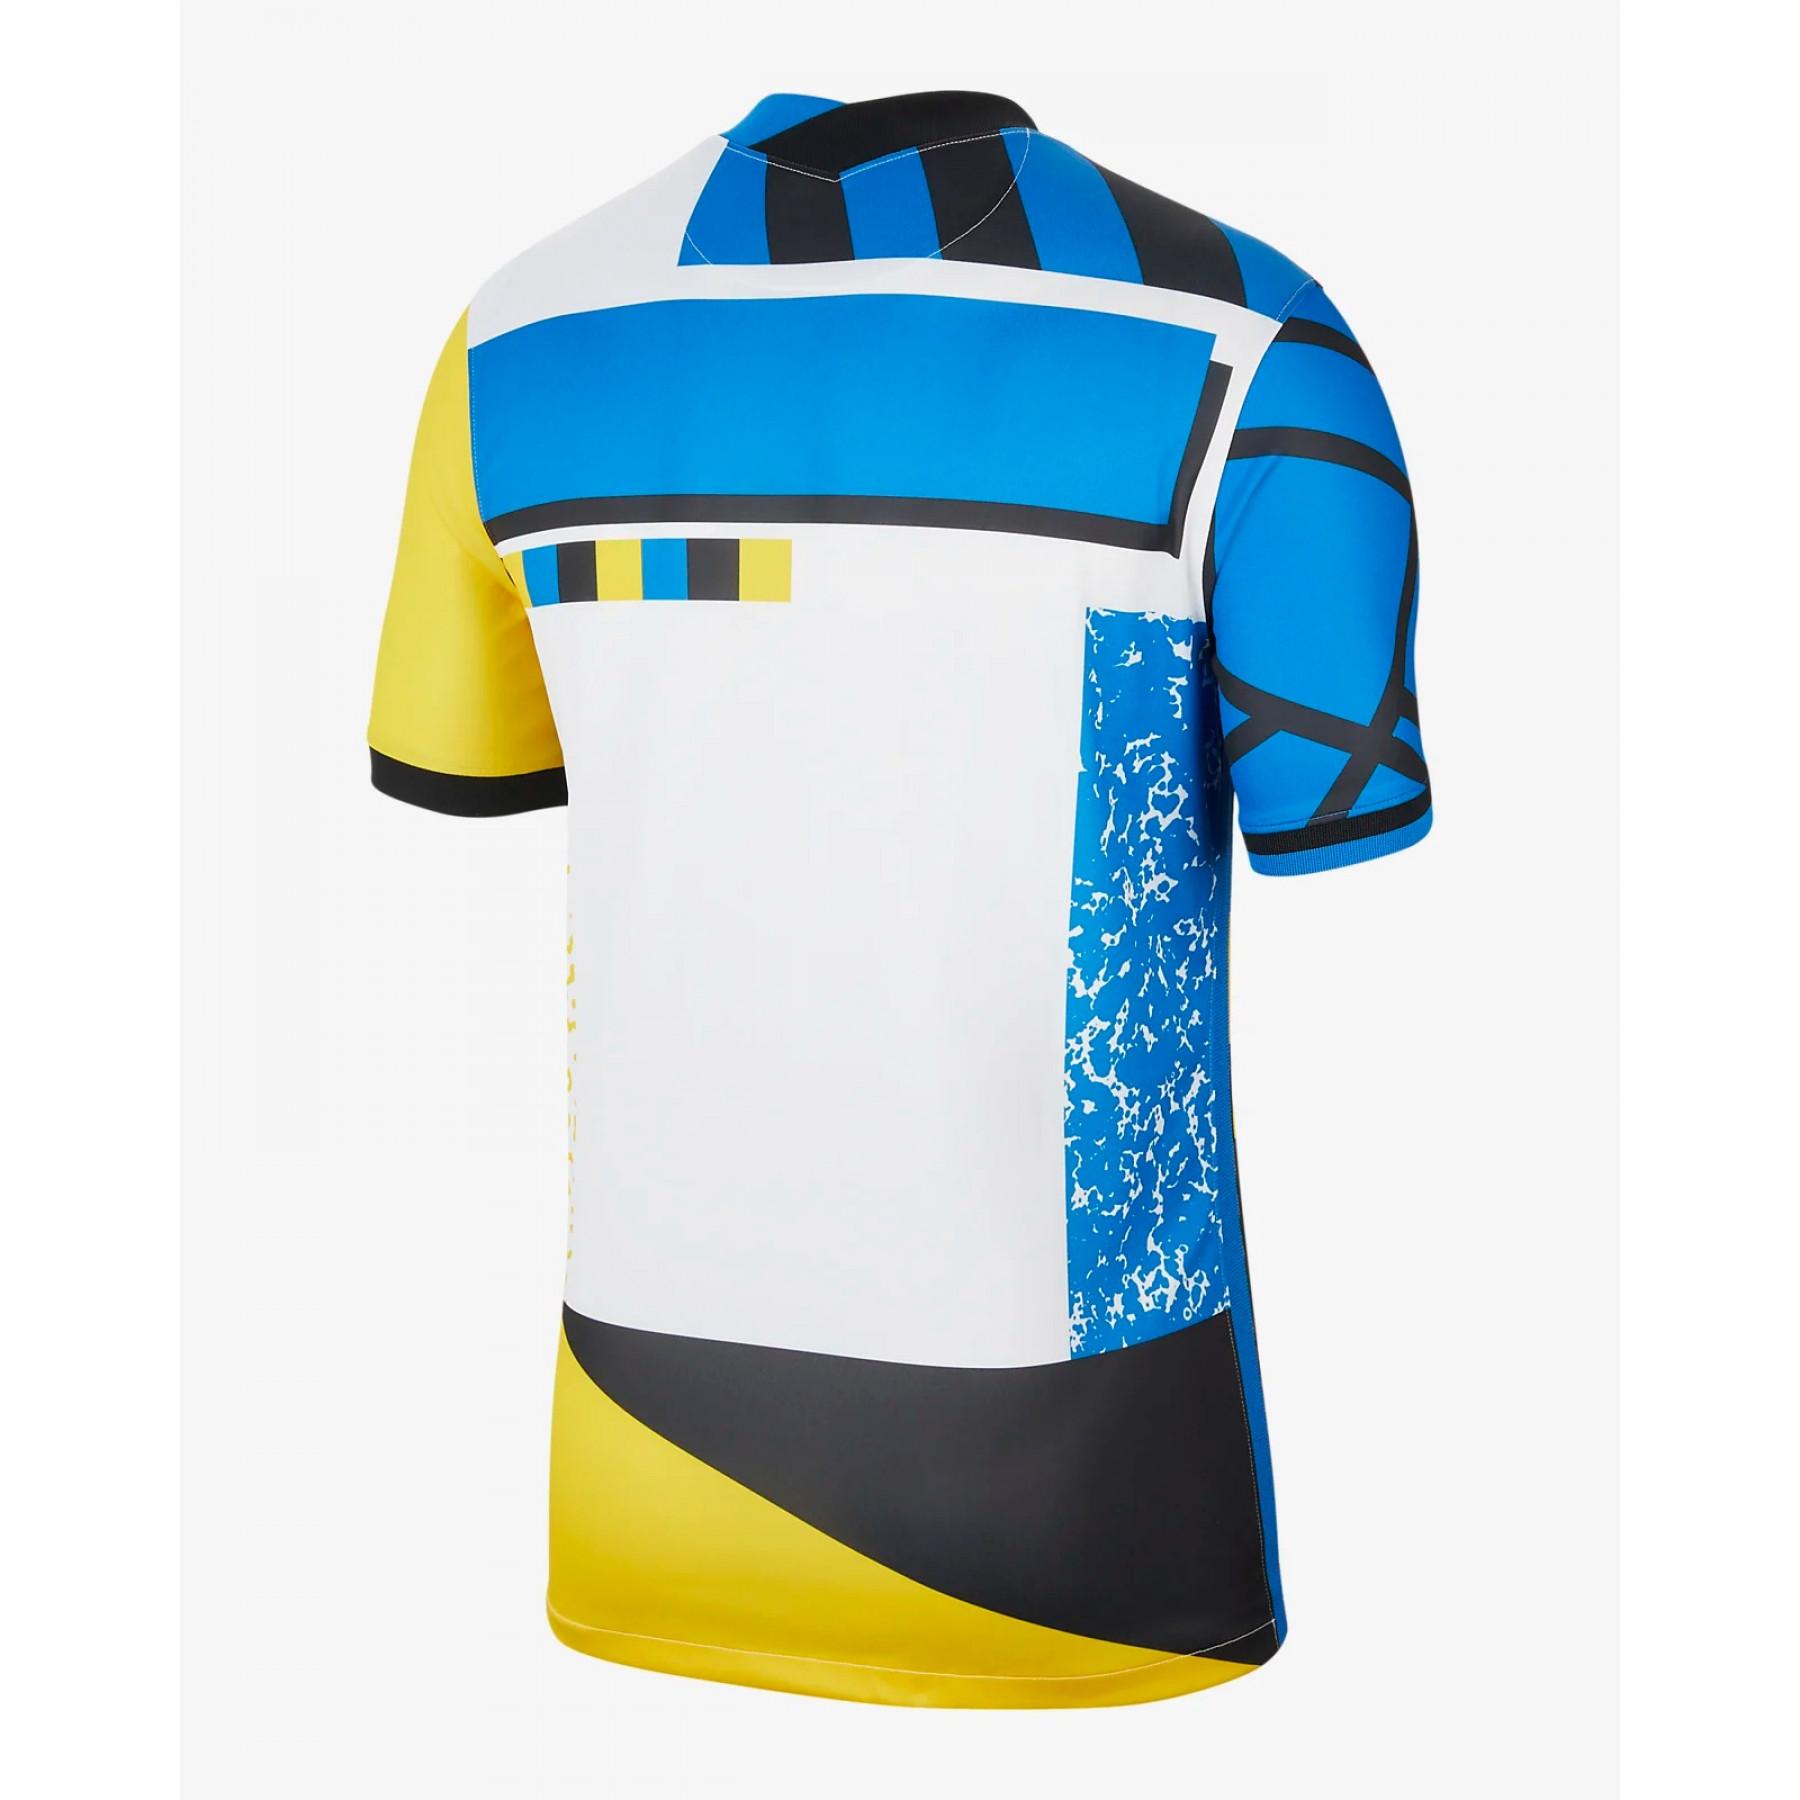 Camiseta cuarta equipación Inter Milan 2020/21